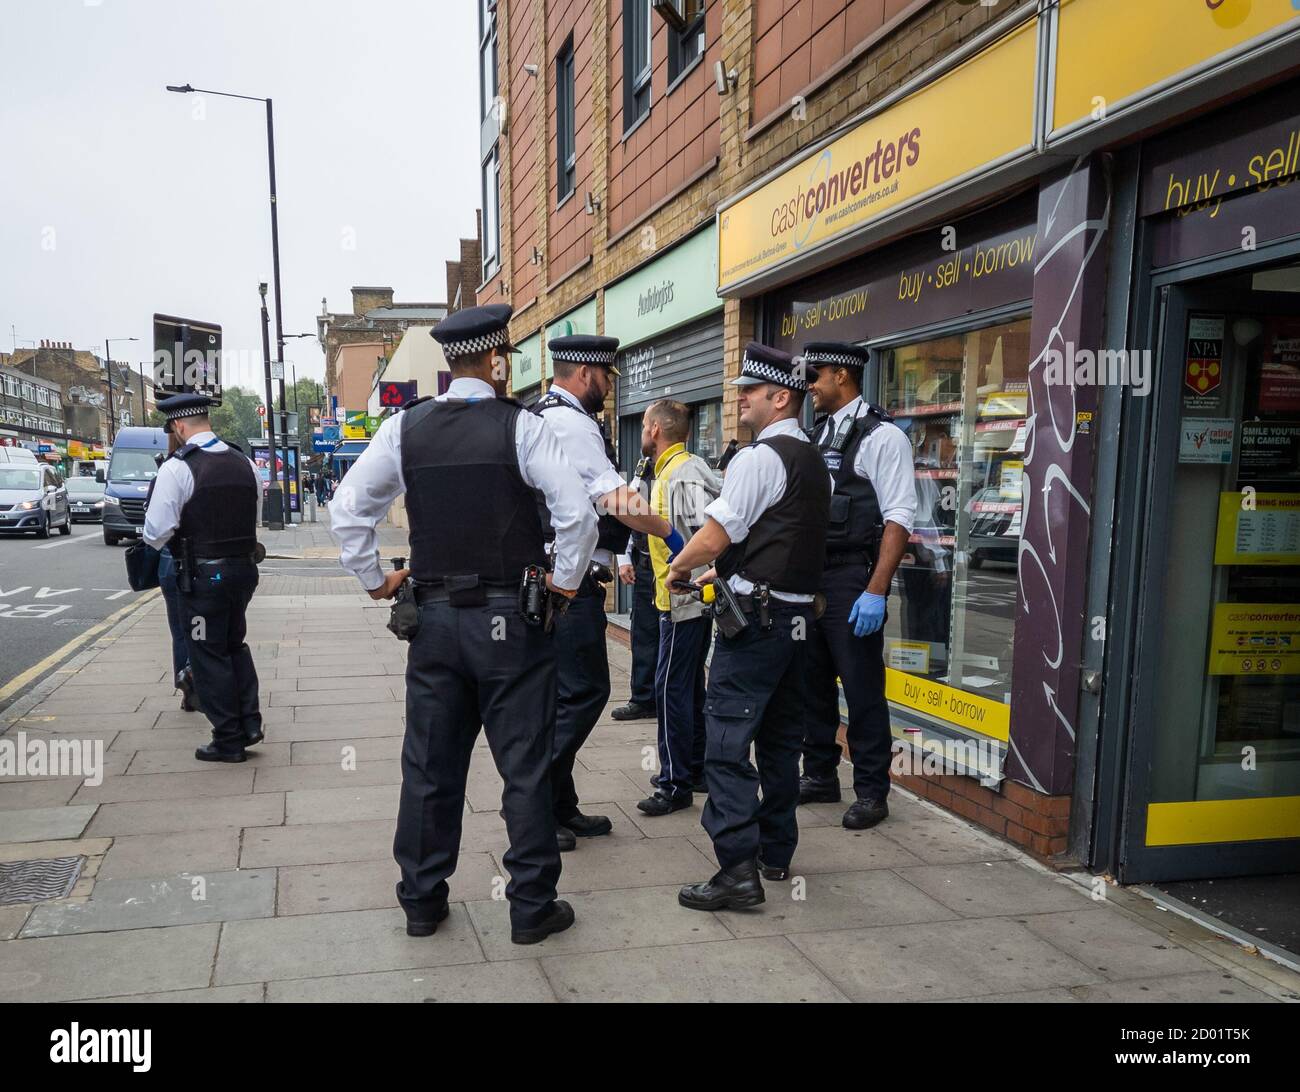 La police de l'est de Londres faisant une arrestation d'un suspect. Banque D'Images